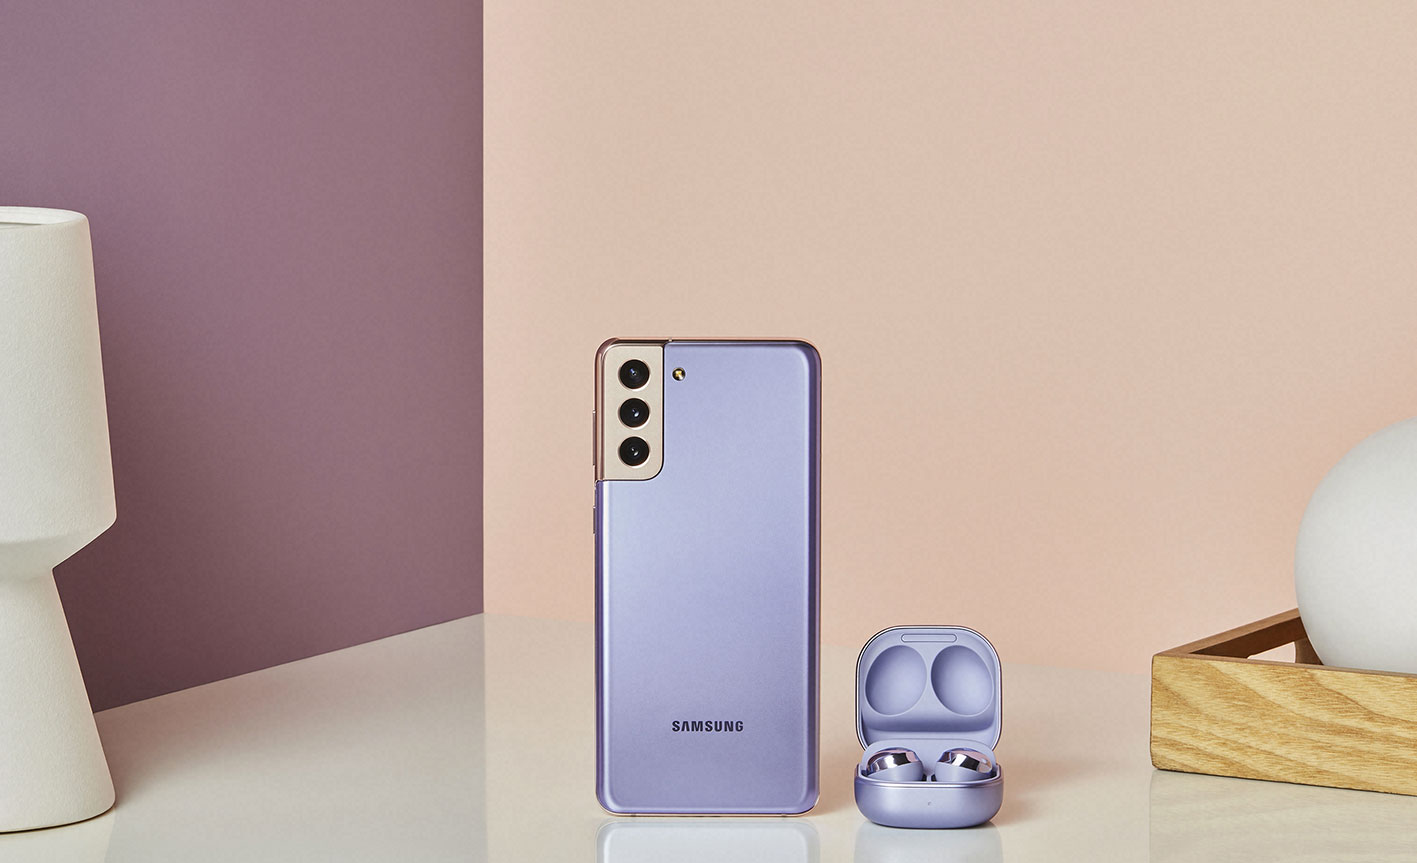 Samsung Galaxy S21 Violet